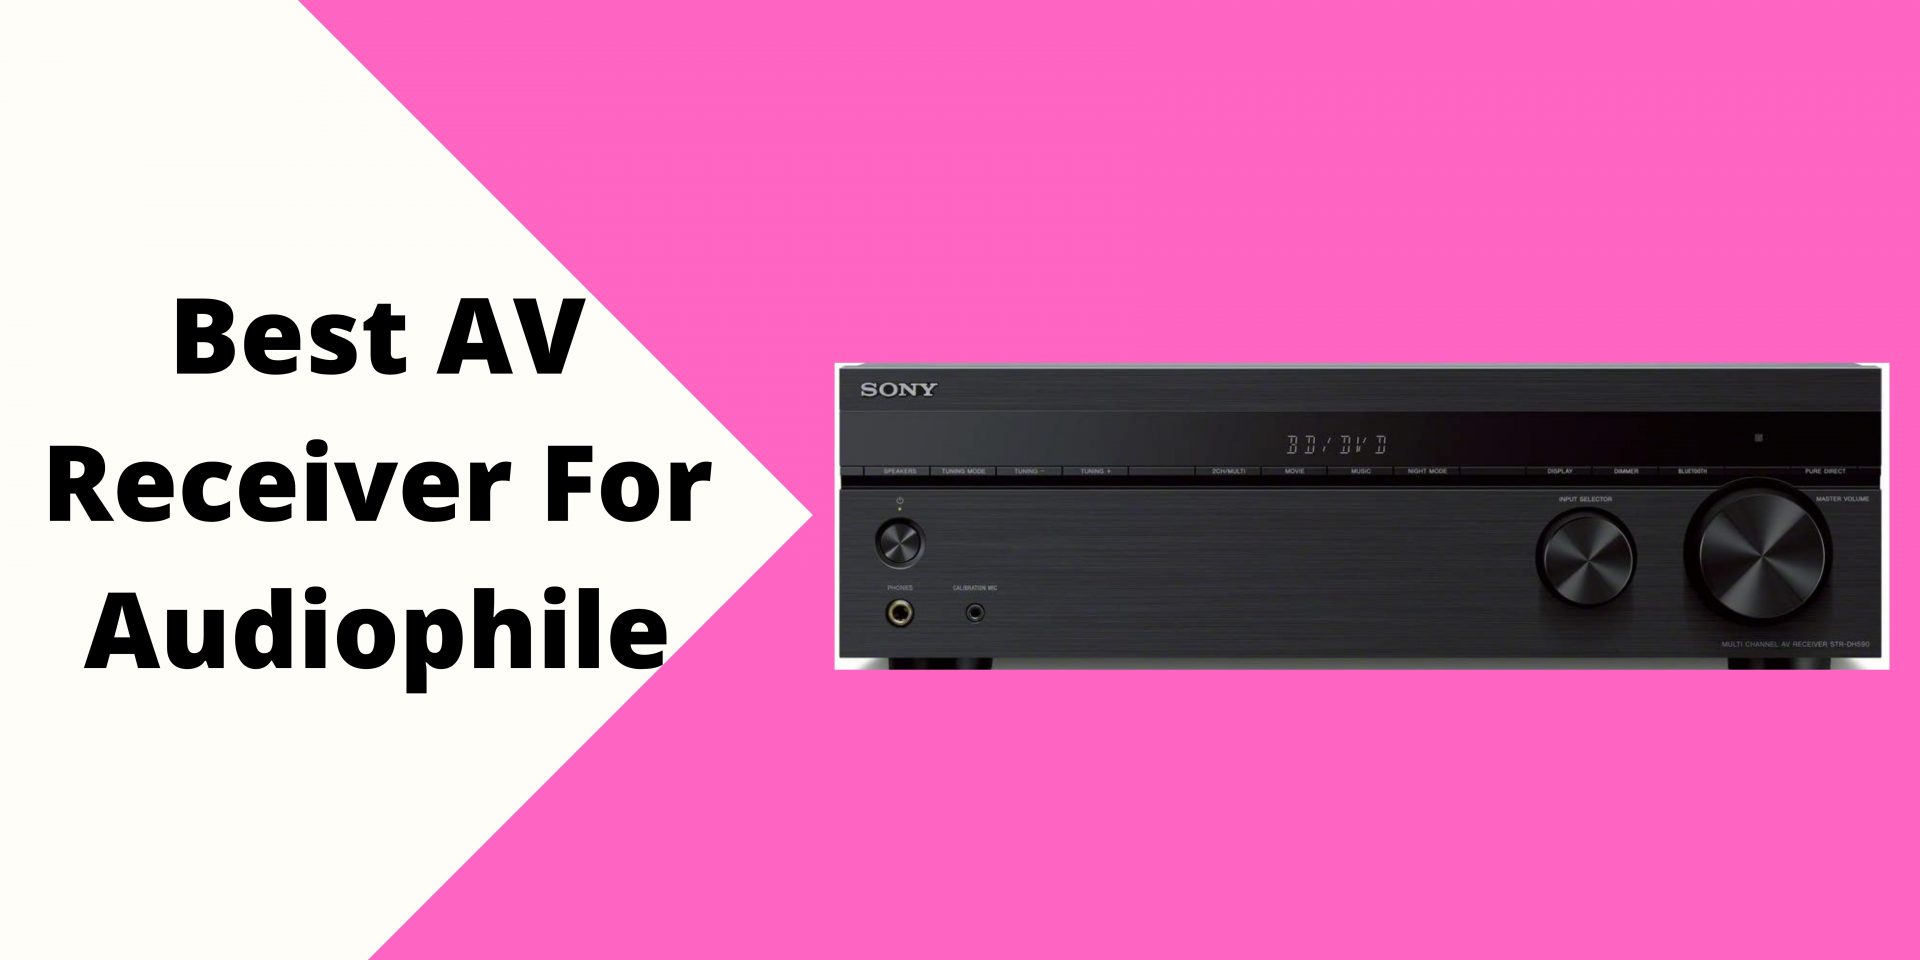 Best AV Receiver For Audiophile